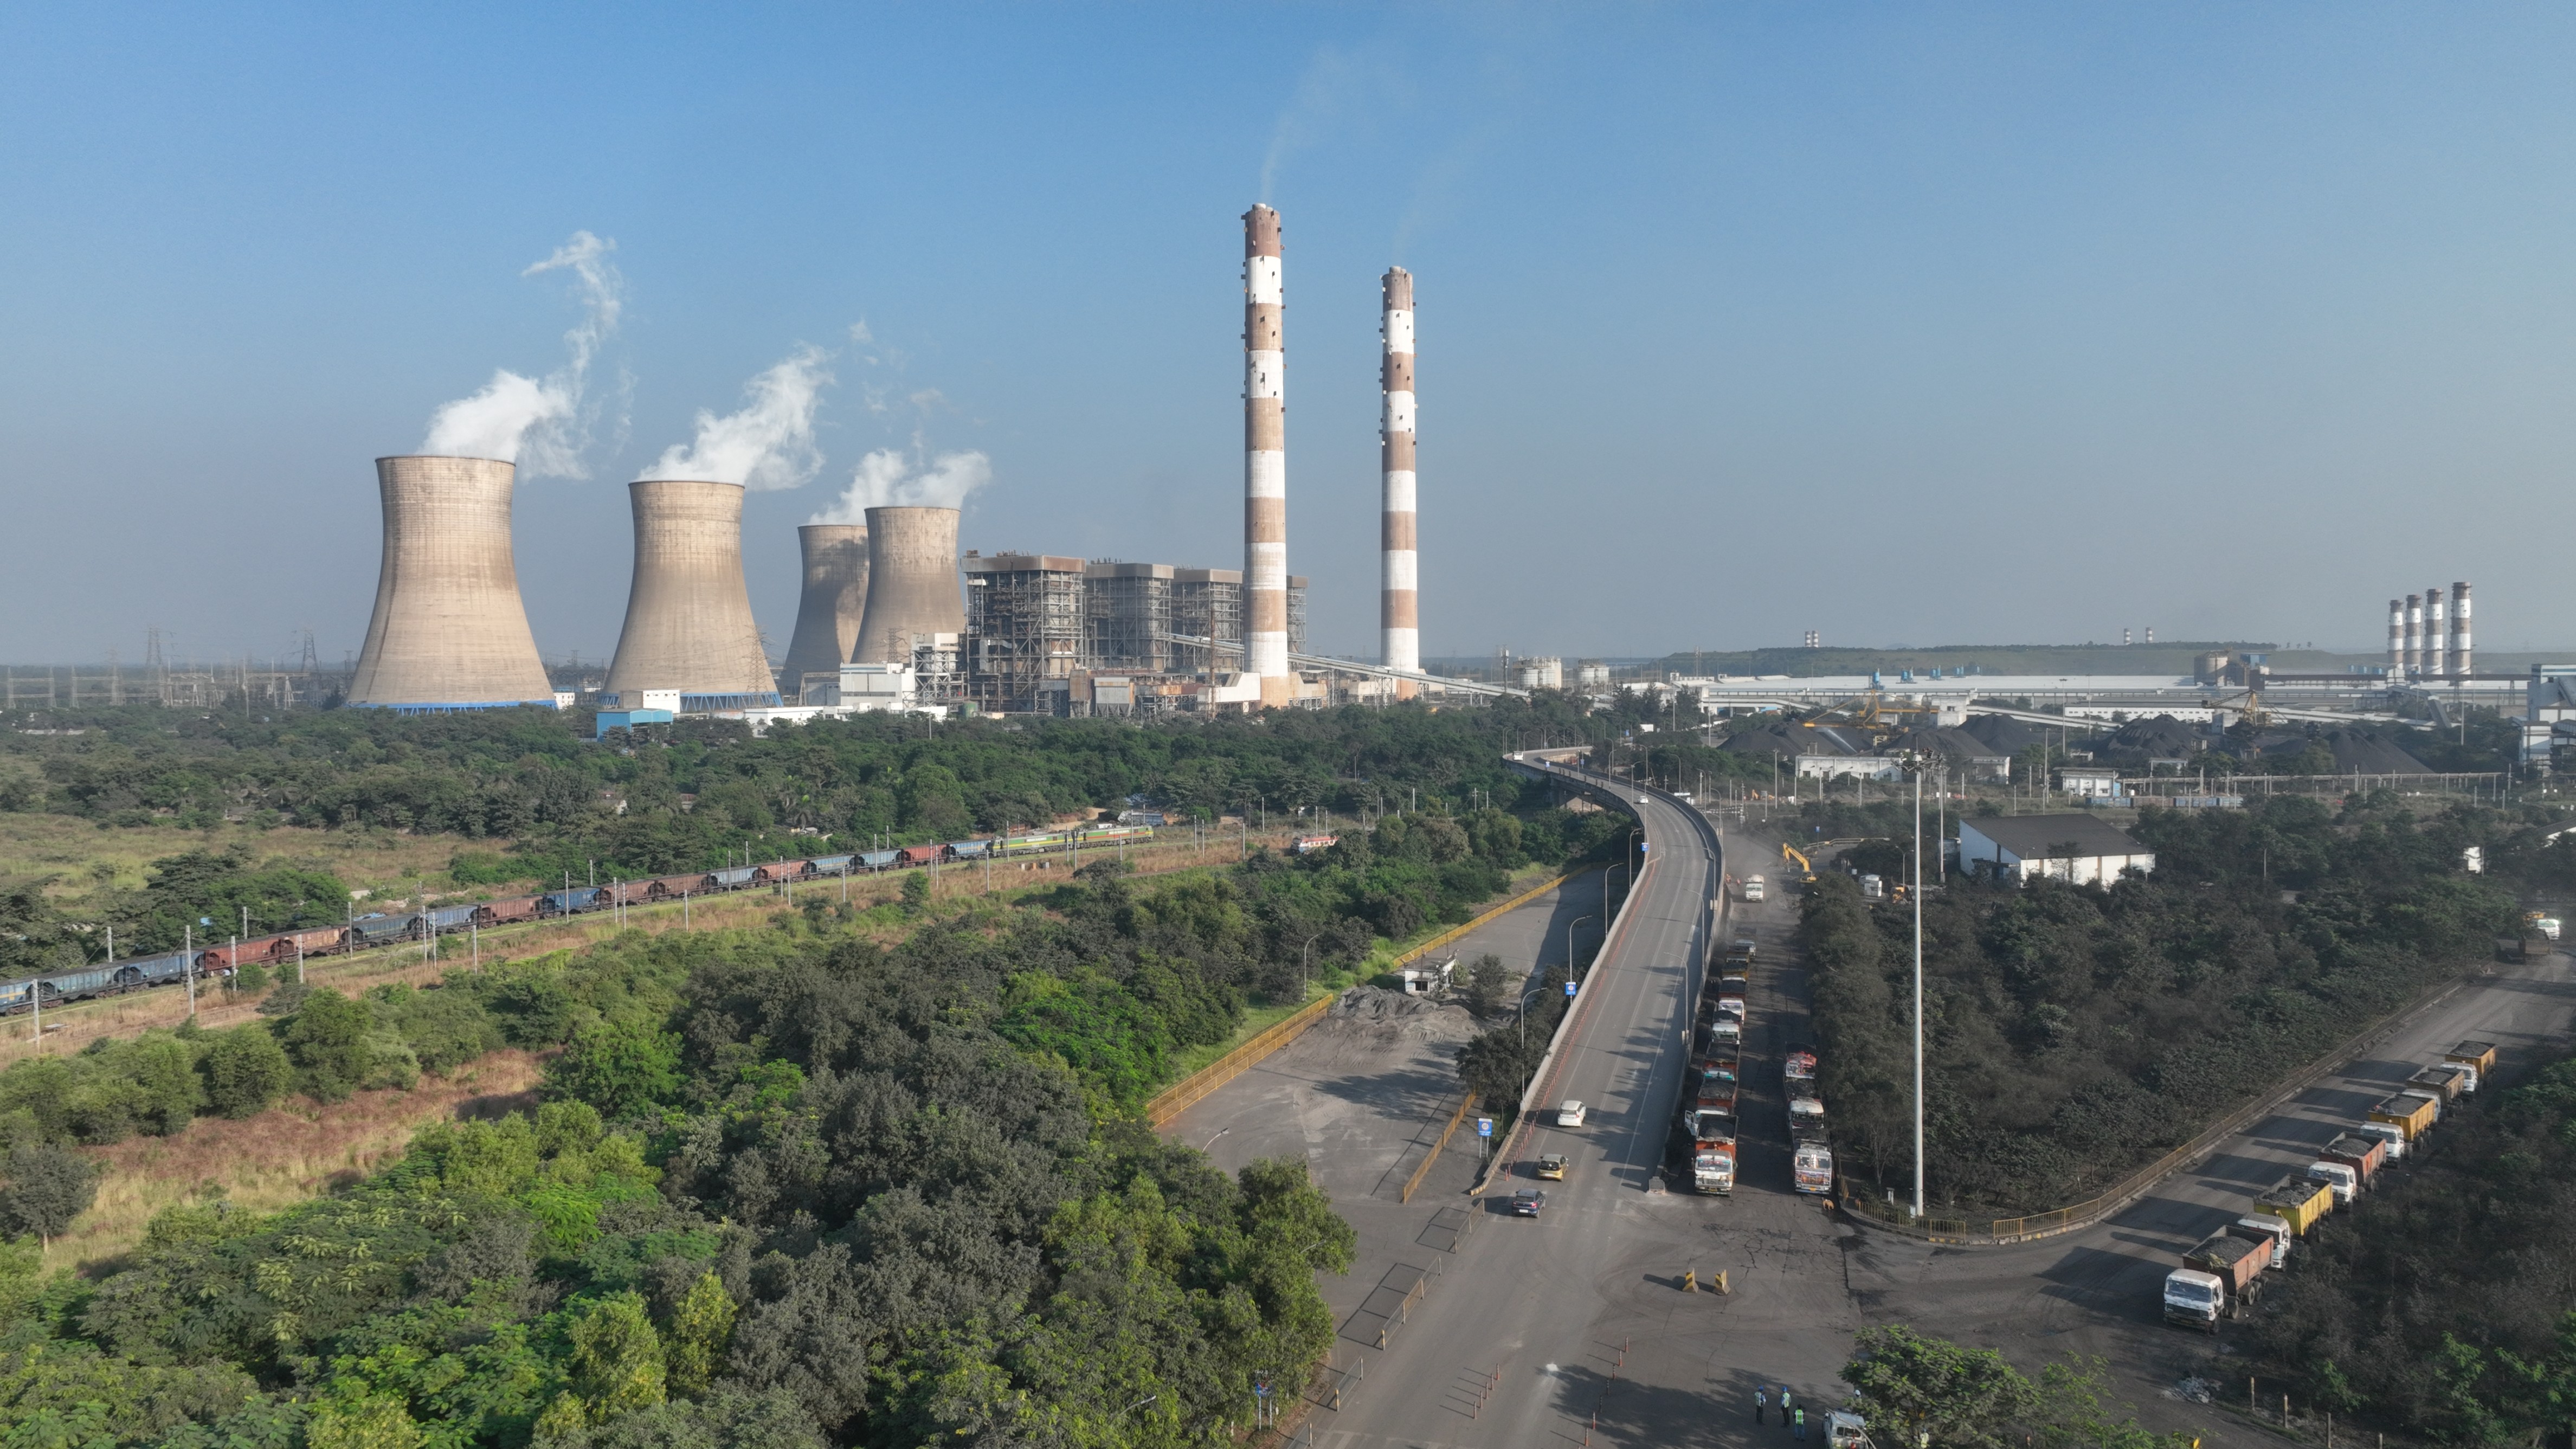 Vedanta Aluminium deploys IIoT in power plant to improve emissions control